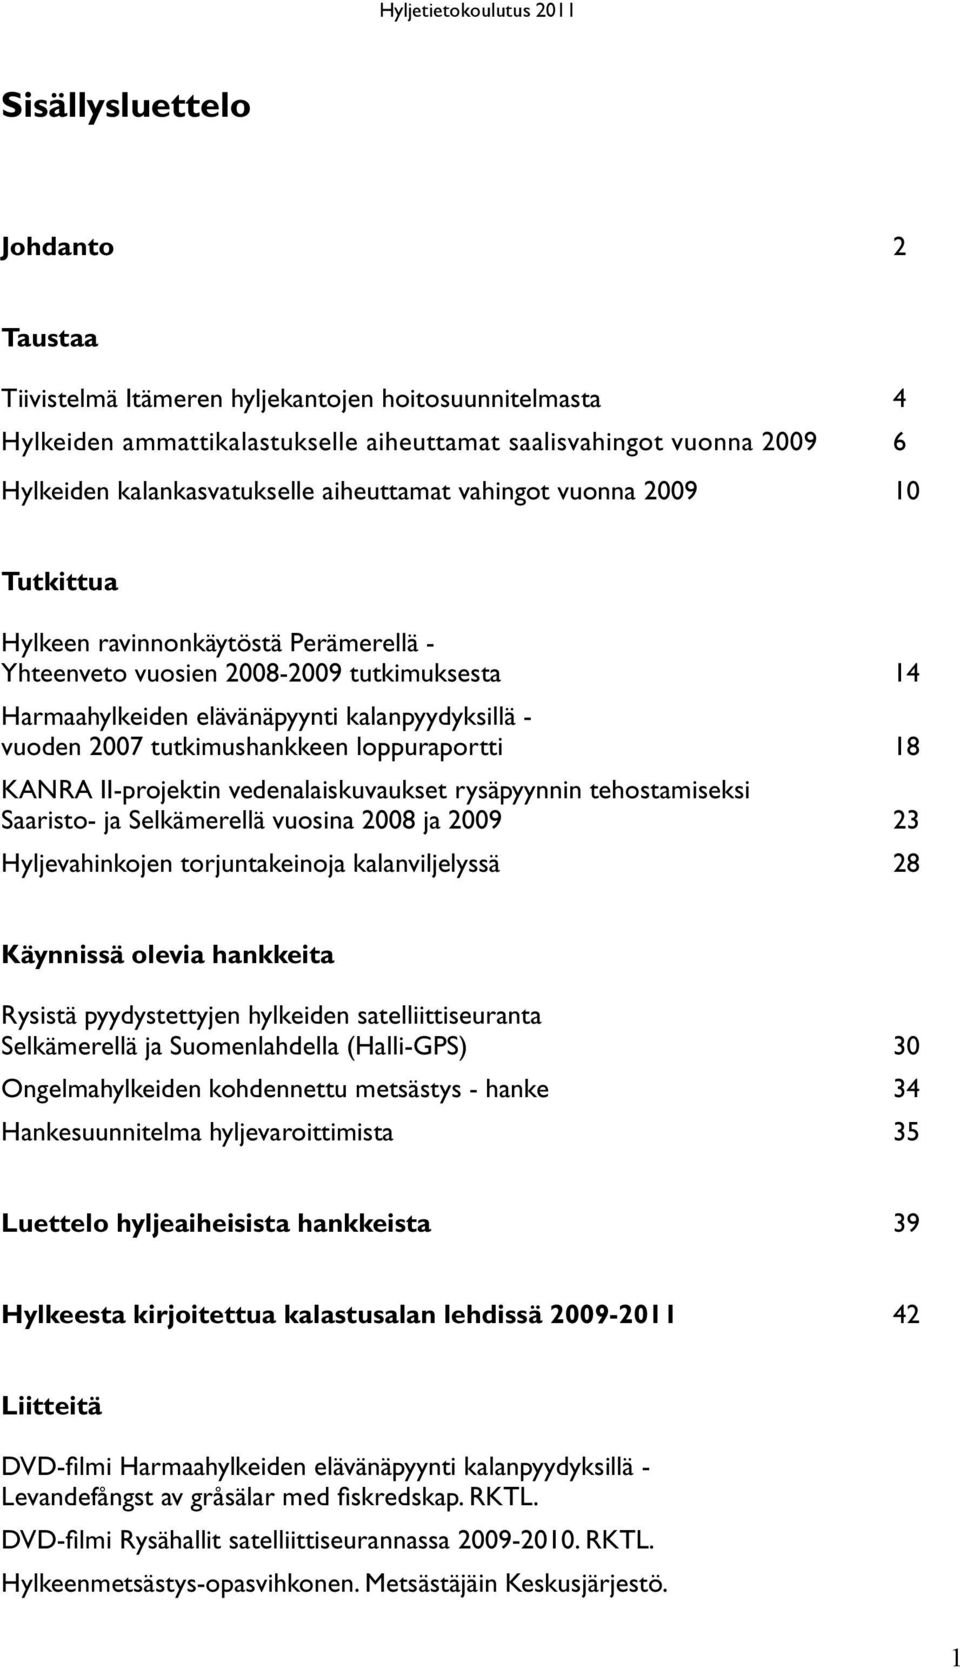 tutkimushankkeen loppuraportti 18 KANRA II-projektin vedenalaiskuvaukset rysäpyynnin tehostamiseksi Saaristo- ja Selkämerellä vuosina 2008 ja 2009 23 Hyljevahinkojen torjuntakeinoja kalanviljelyssä